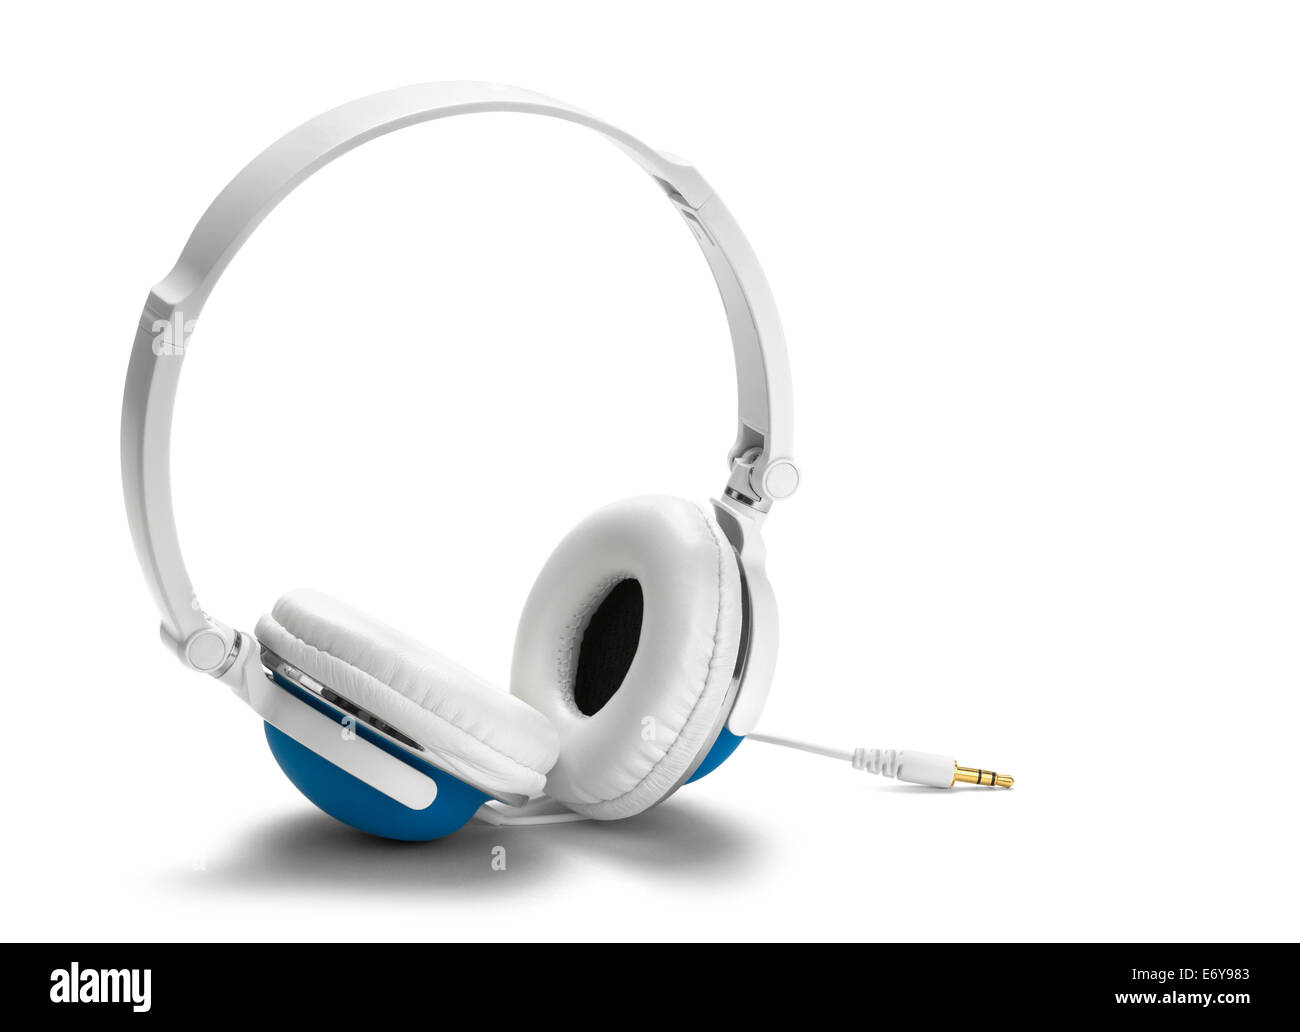 Große blaue und weiße Kopfhörer Isolated on White Background. Stockfoto